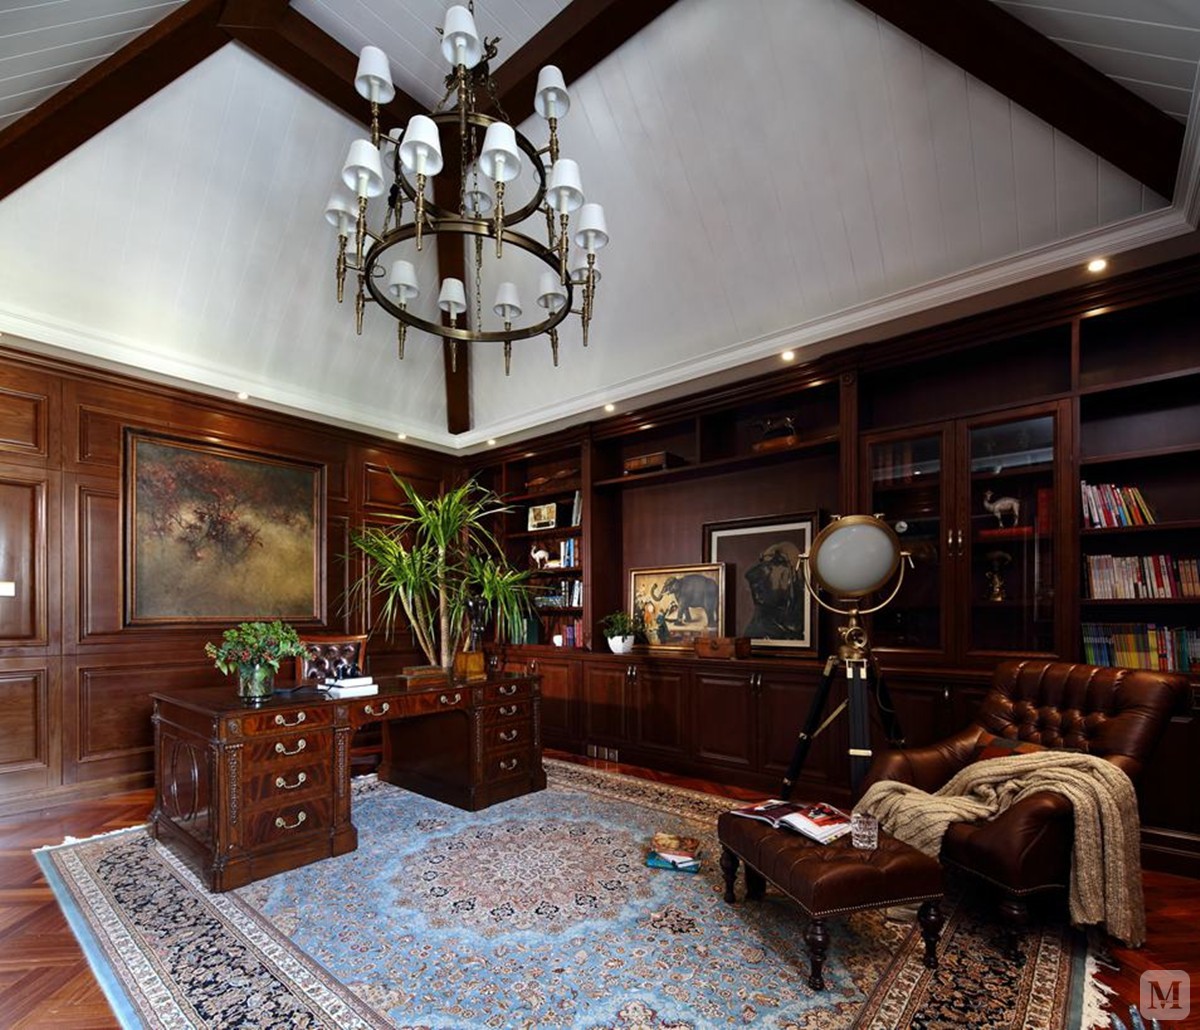 棕色的木质的书架充斥着整个别墅装修的书房墙面，使整个空间干净优雅，白色的天花板、碎花儿的地毯和绿植打破了单调的空间视觉。